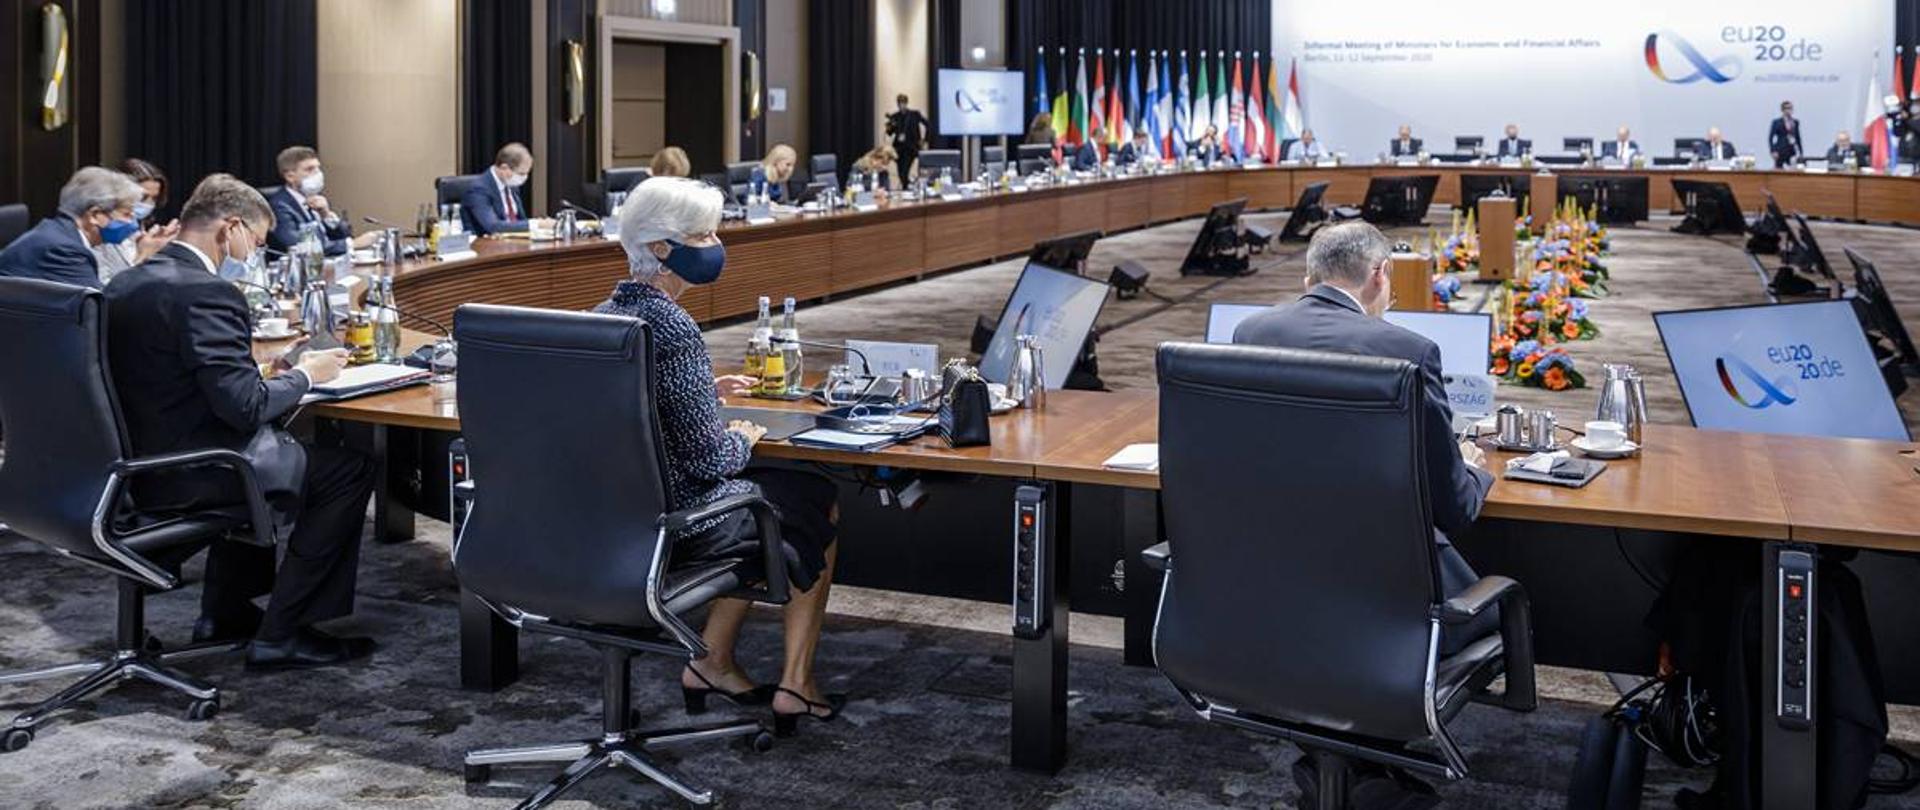 Spotkanie ECOFIN, uczestniczy siedzą wokół stołu, w tle flagi państw UE